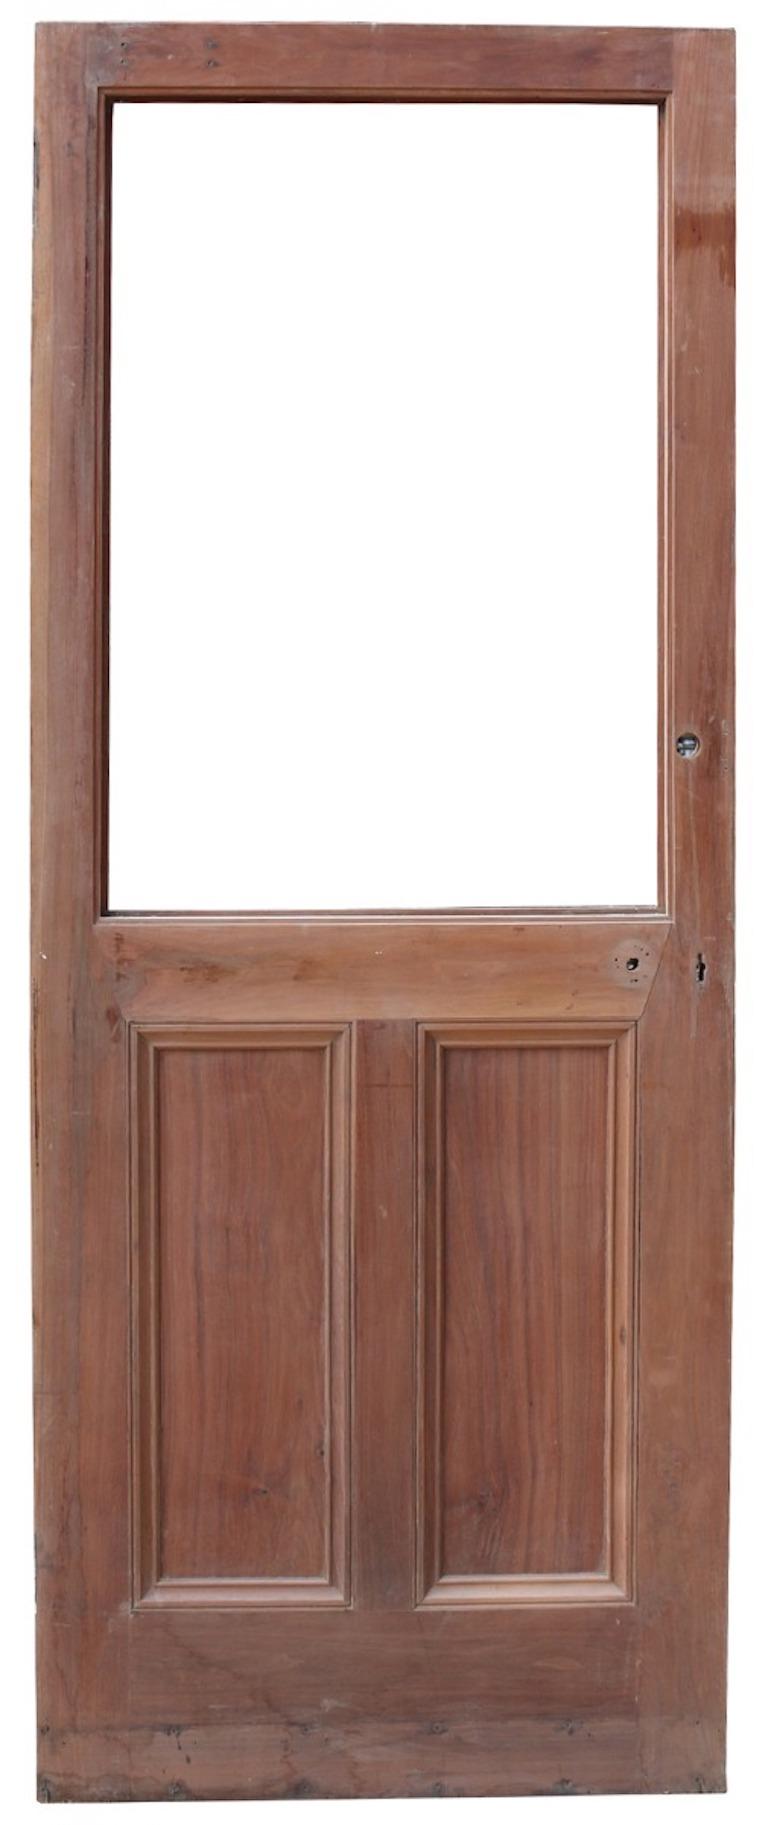 Eine alte Tür aus massivem Nussbaumholz mit Platz für eine Glasscheibe.